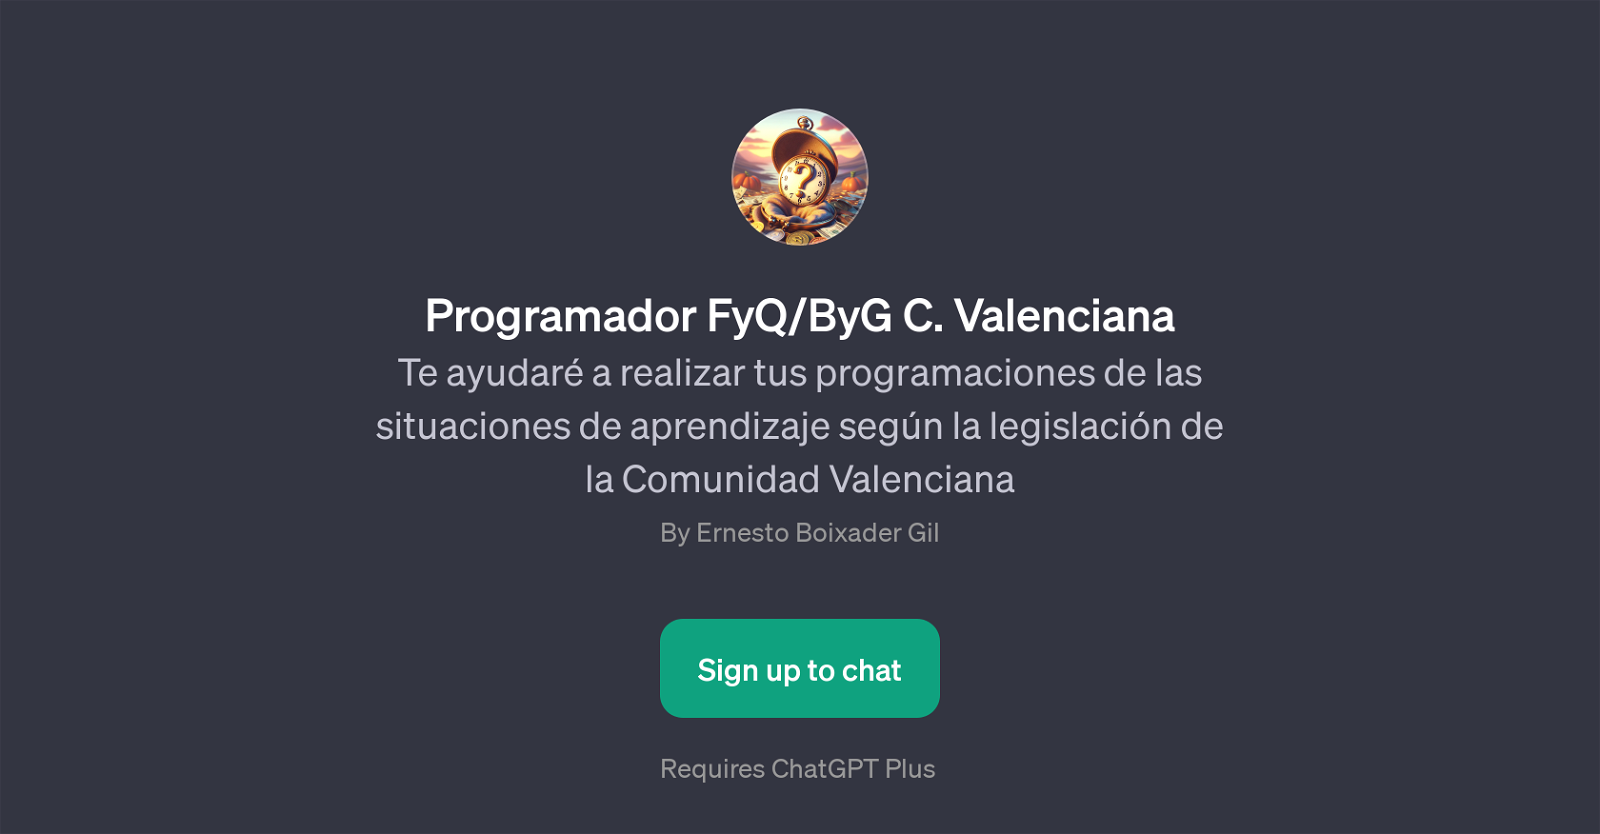 Programador FyQ/ByG C. Valenciana website